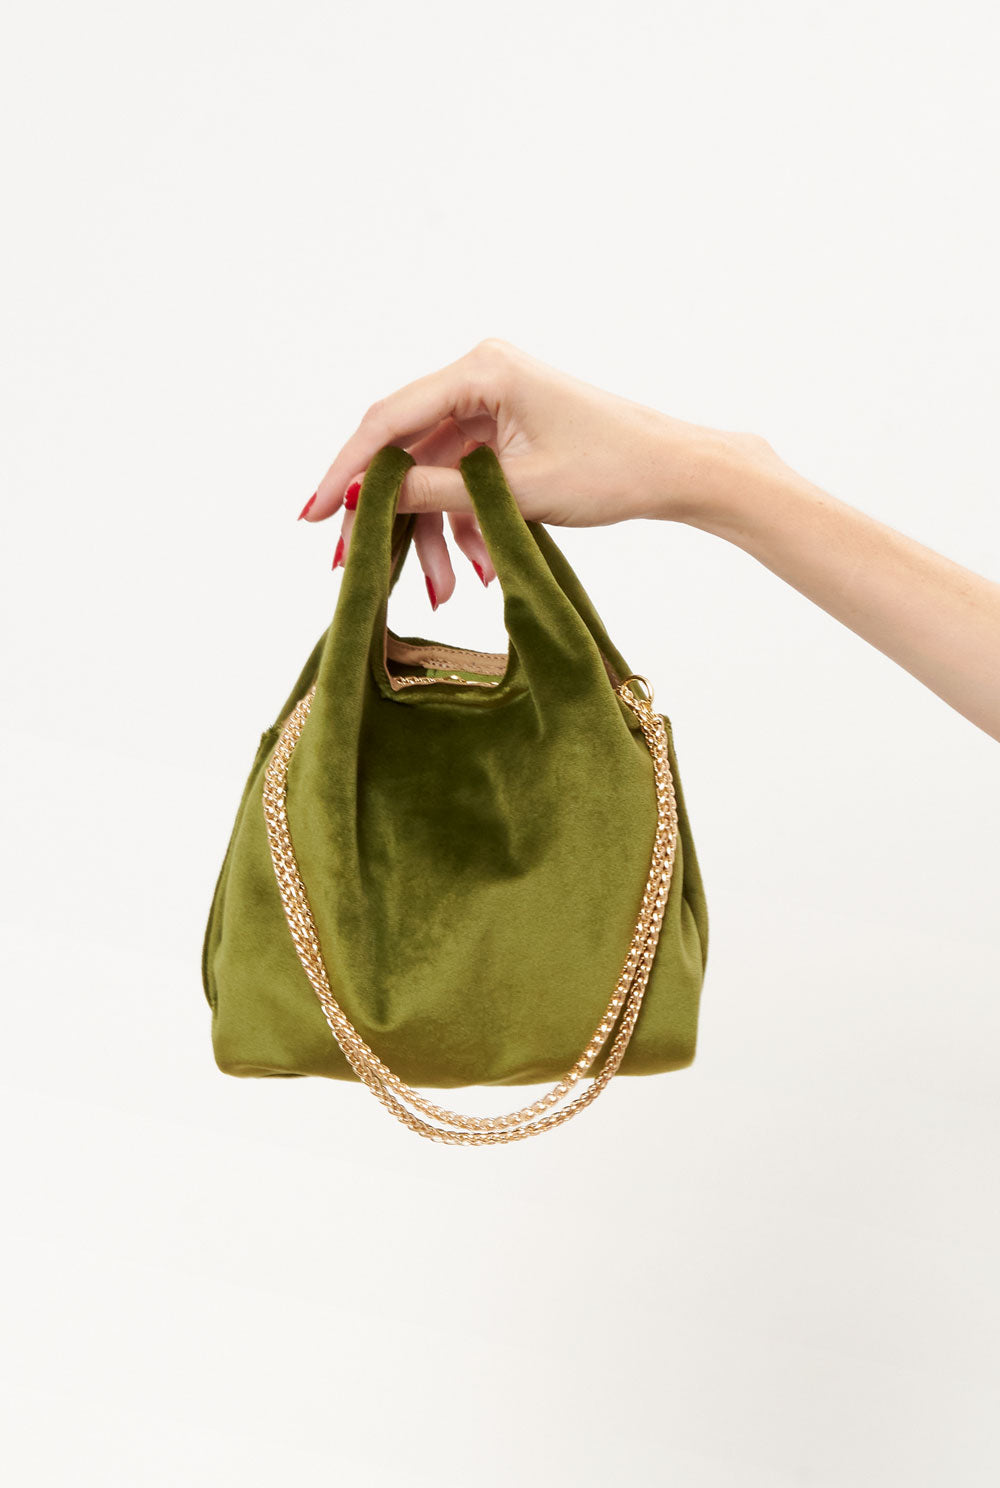 The baby julia bag new velvet olive green Mini bags The Bag Lab 